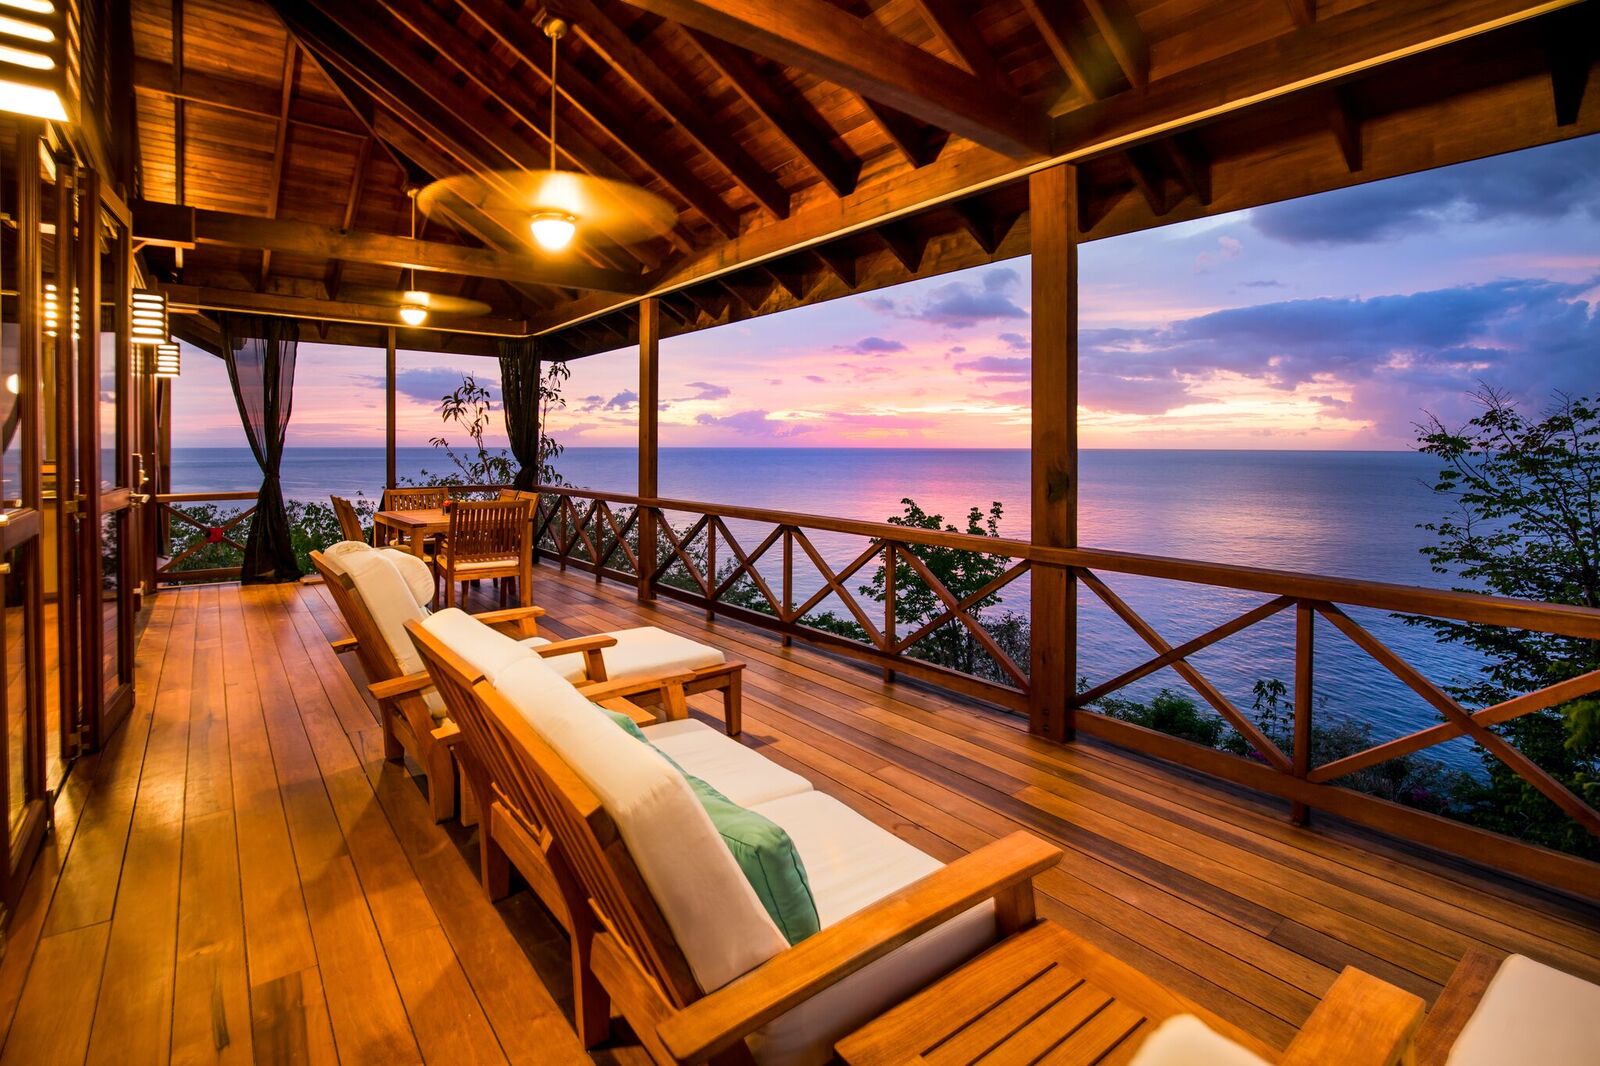 Harper S Bazaar Features Secret Bay As Dominica S Best Luxury Hotel